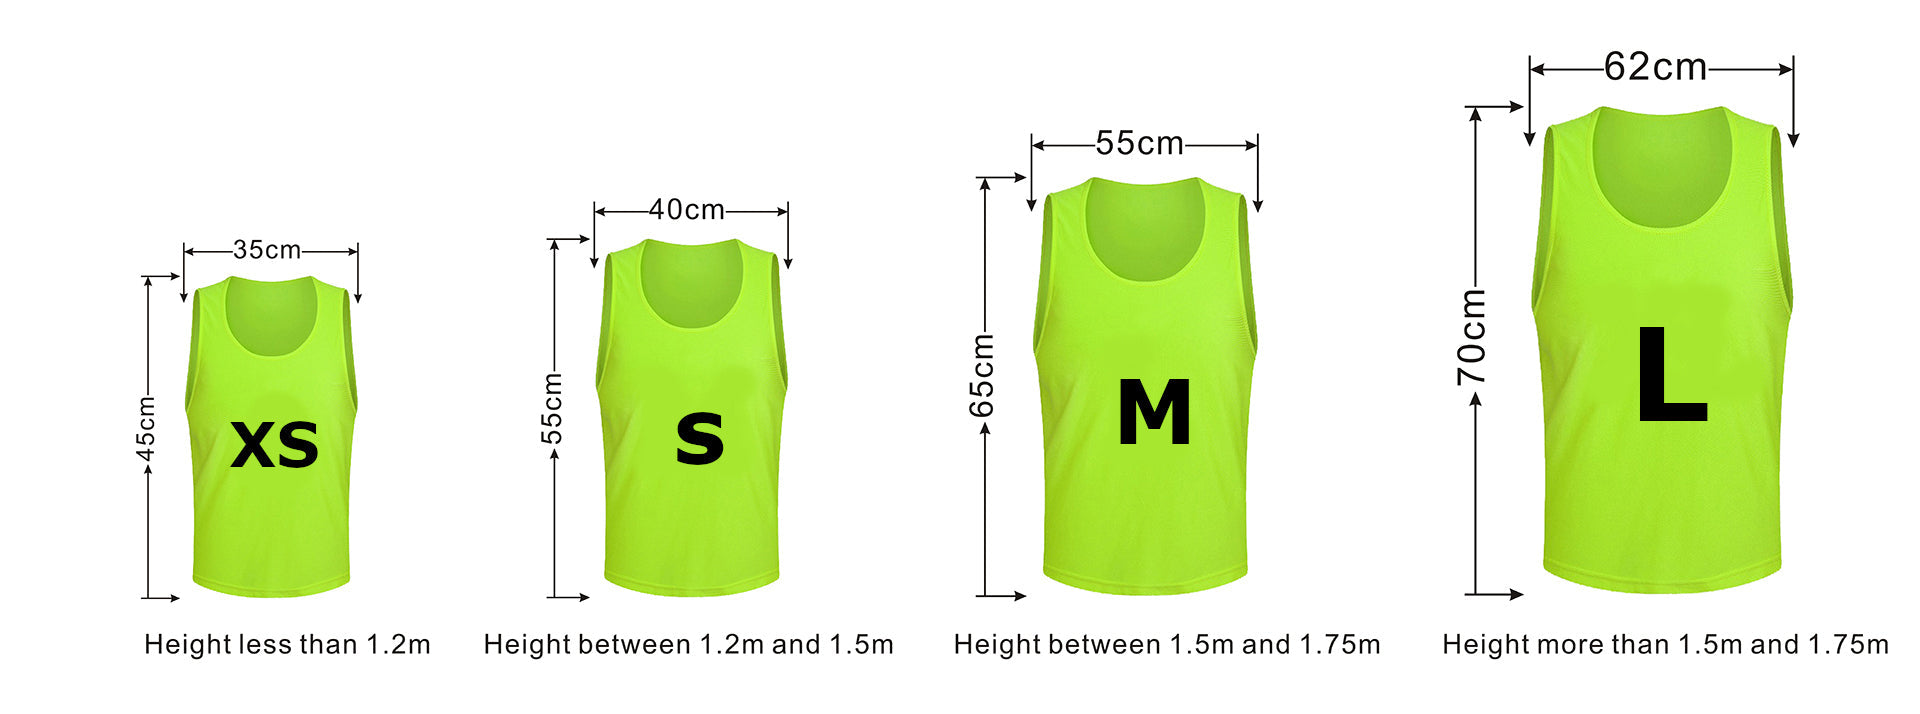 Team Practice Mesh Scrimmage Vests Sport Pinnies Training Bibs (6 Pieces)